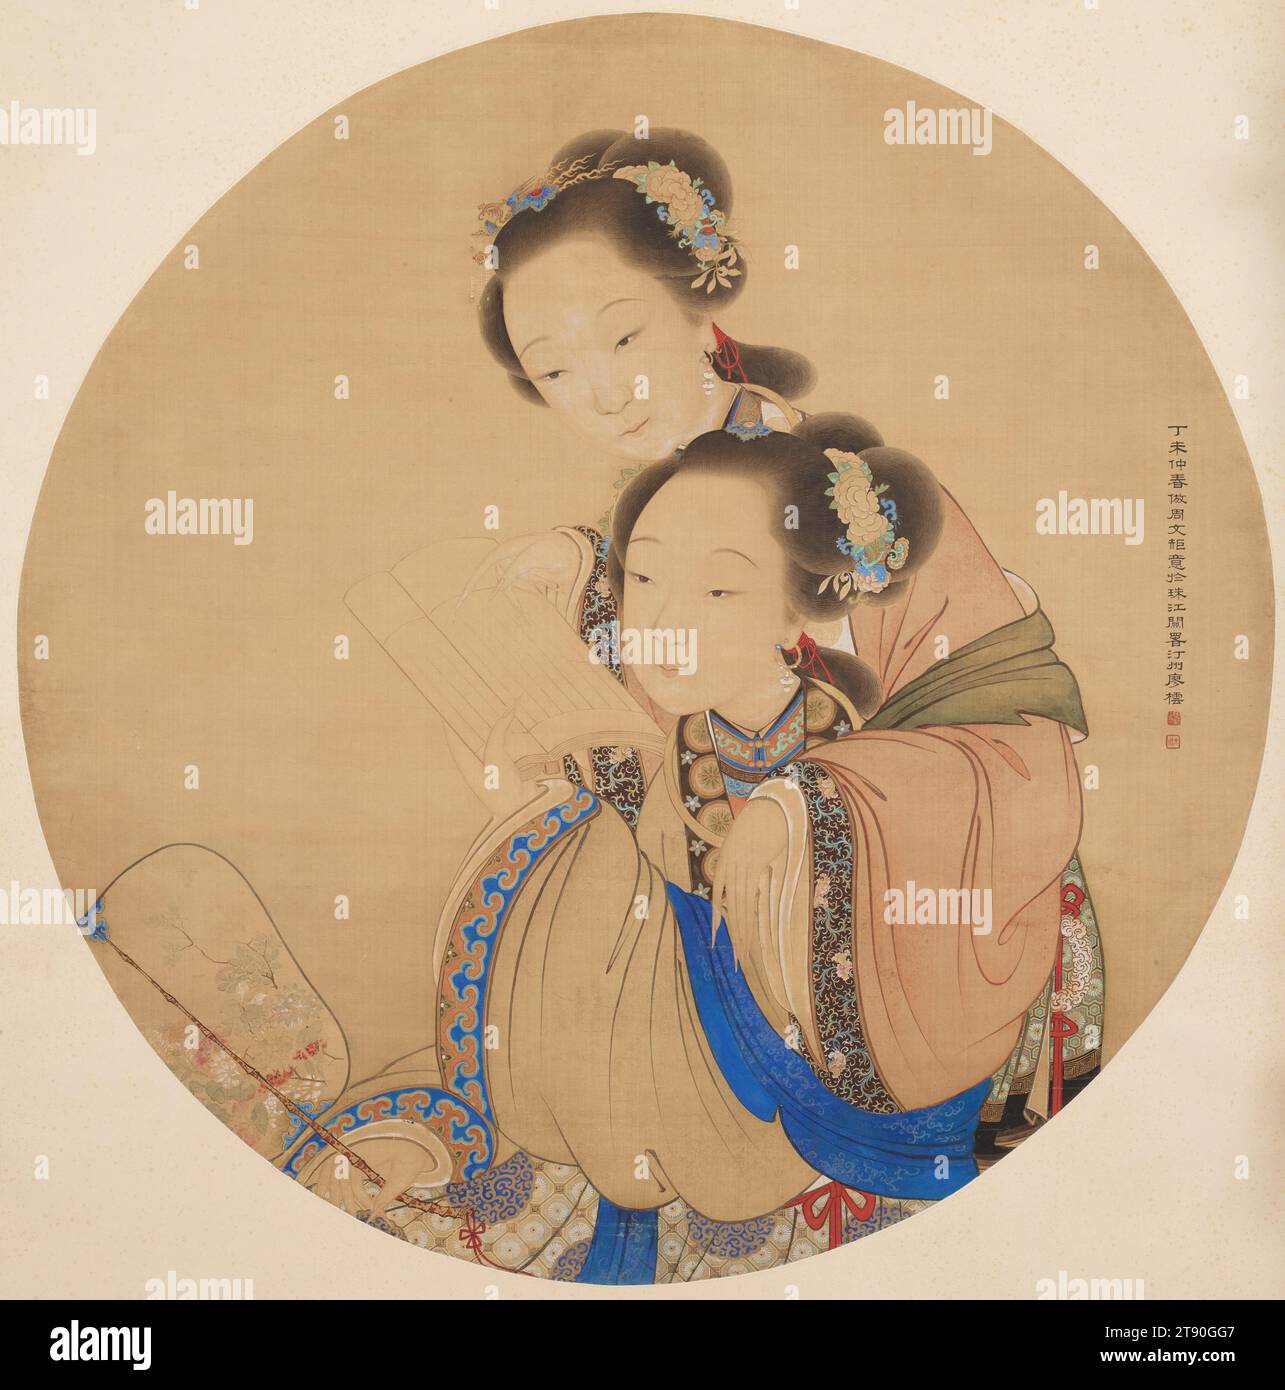 Deux beautés, 1847, Liao Yun, chinois, actif milieu du 19e siècle, 42 15/16 × 42 13/16 po. (109,1 × 108,7 cm) (image, ronde)71 1/8 × 46 1/8 po (180,7 × 117,2 cm) (hors tout, sans rouleau)75 1/2 × 49 po (191,8 × 124,5 cm) (monture, avec rouleau), encre et couleur sur soie, Chine, 19e siècle, ce tableau représente deux jeunes femmes, l'une assise avec un livre à la main et l'autre debout derrière elle, pointant vers une ligne dans le livre. Leurs accessoires et leurs vêtements luxueux suggèrent qu'elles sont des femmes de haut statut de la cour impériale ou d'autres niveaux supérieurs de la société. Banque D'Images